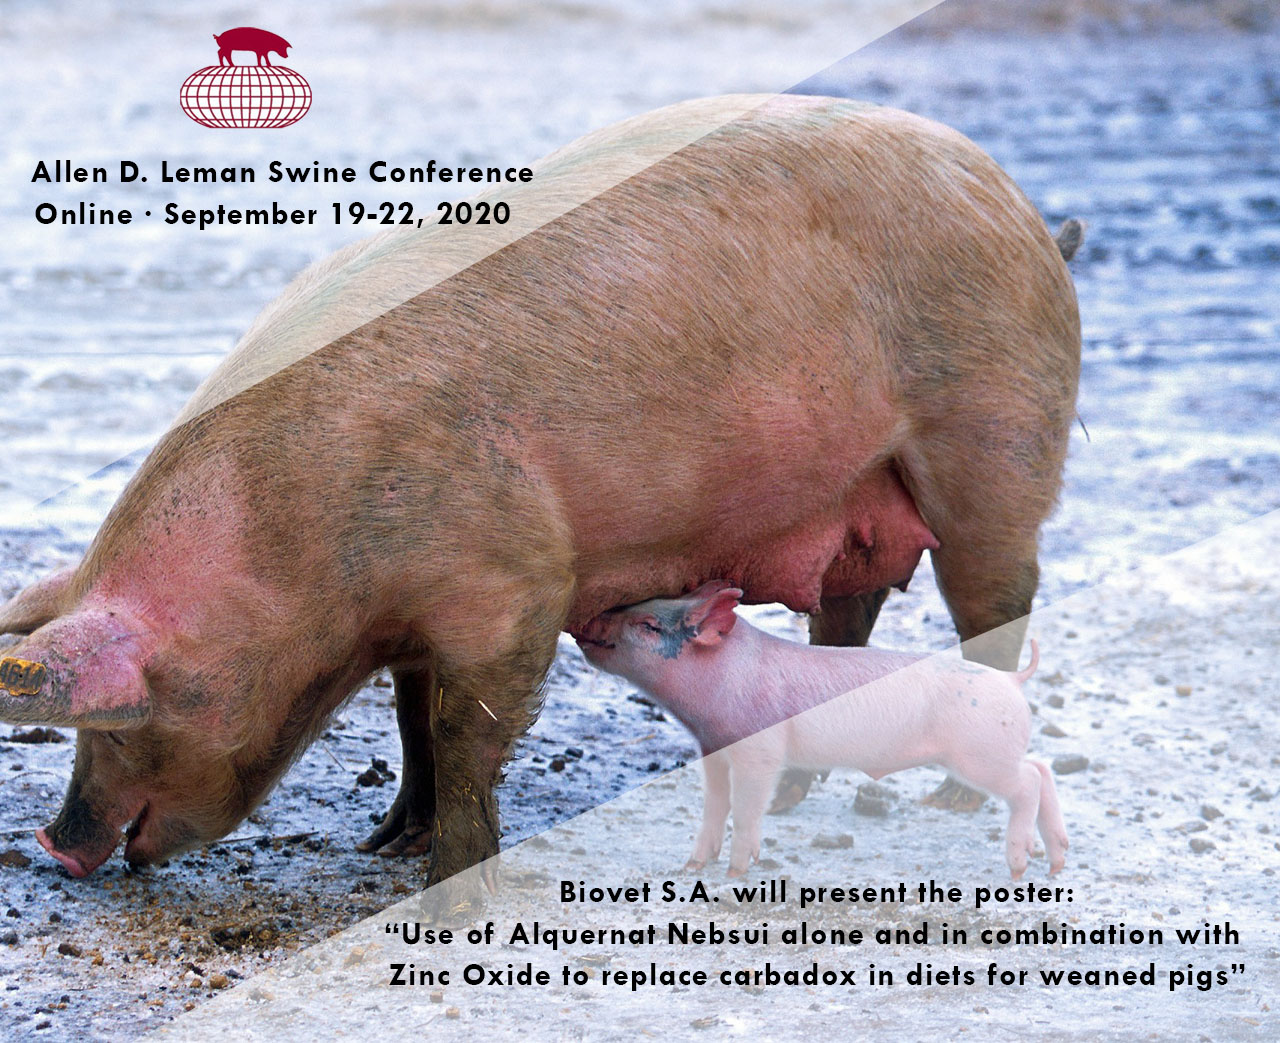 Alquernat Nebsui para controlar las diarreas post-destete, póster en Allen D. Leman Swine Conference